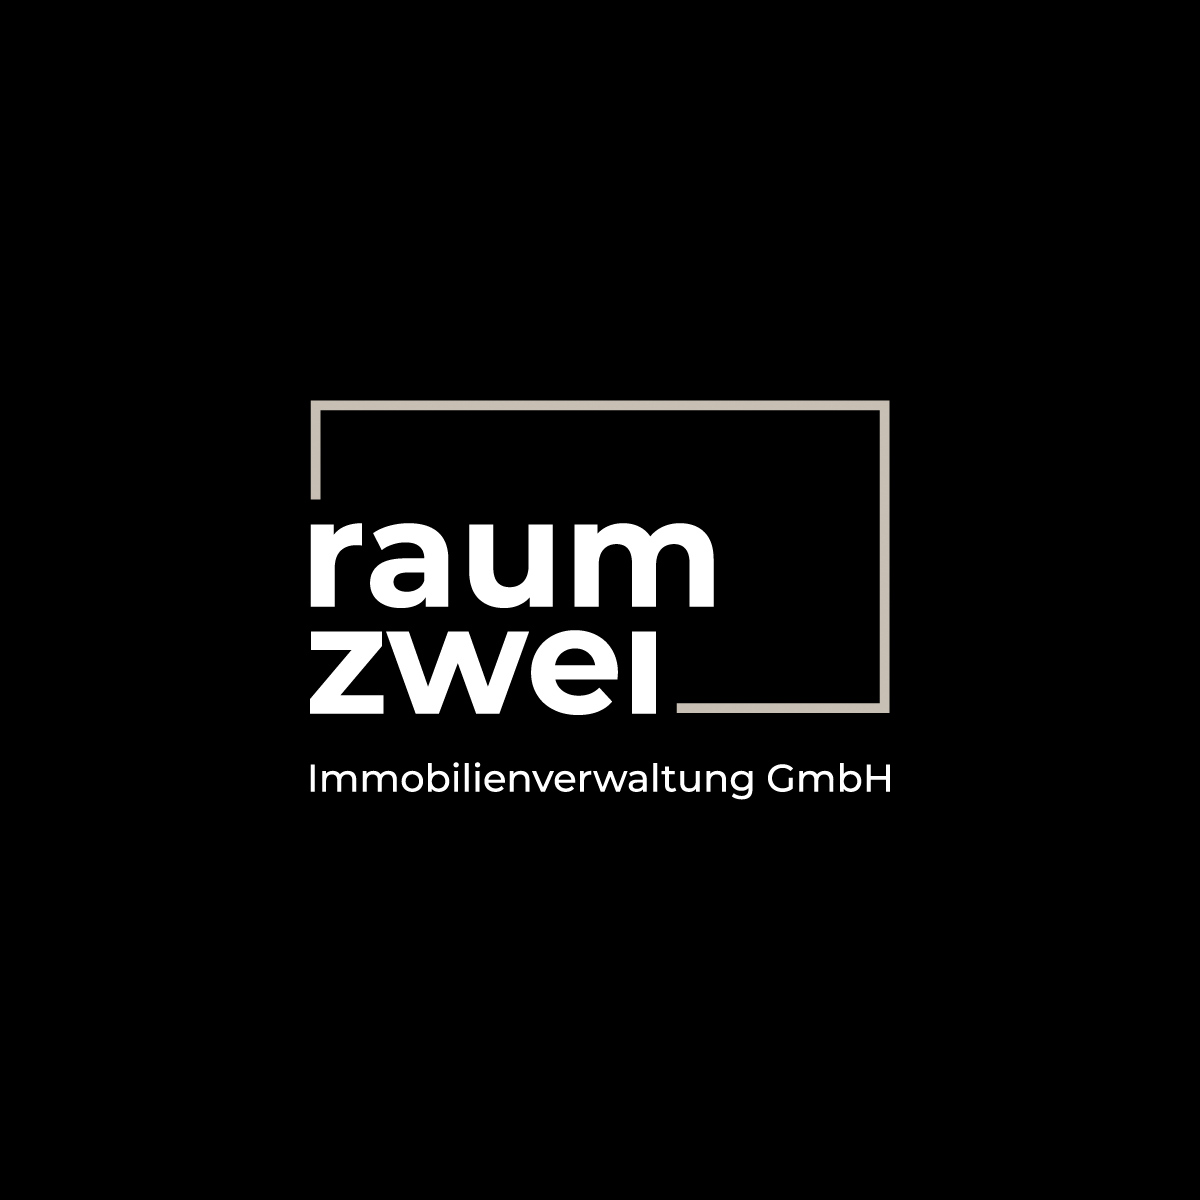 20220119-raumzwei-logo-weiß-farbig-auf-schwarz